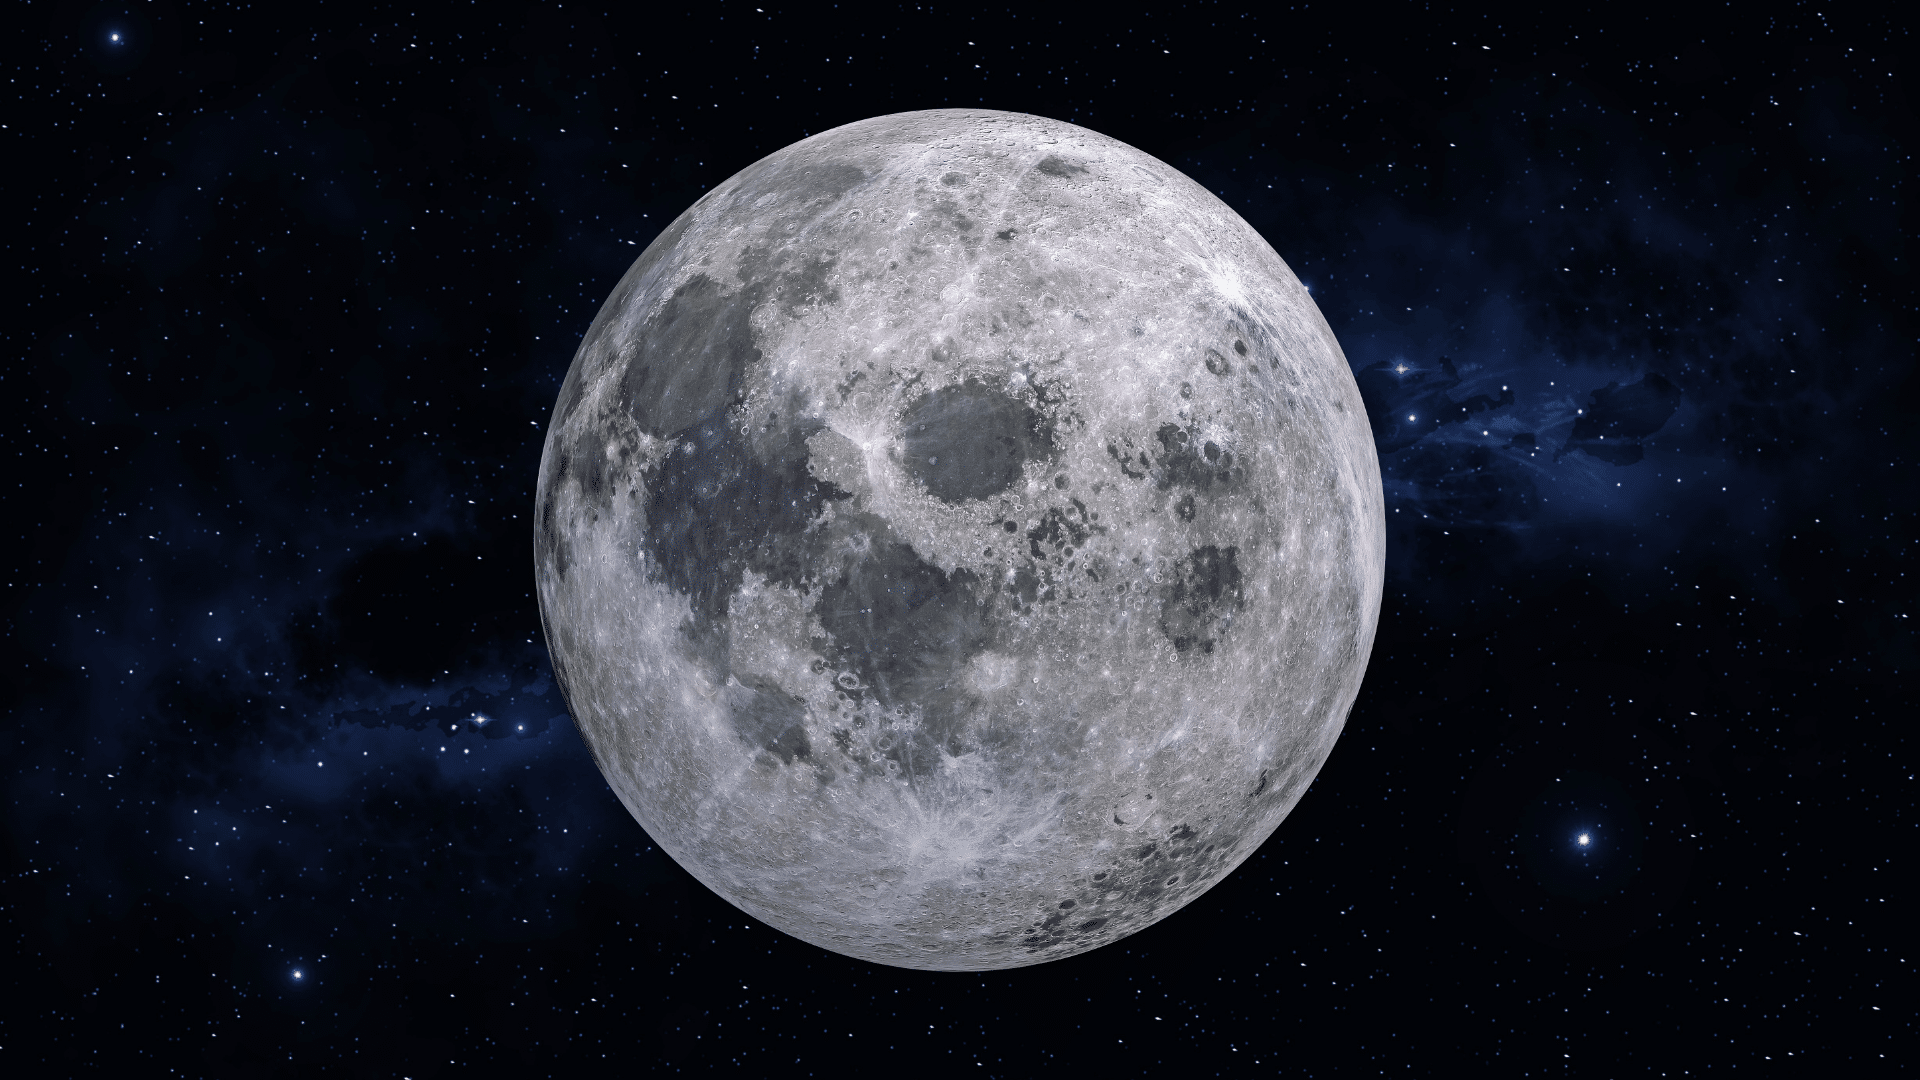 La Luna como escenario de disputa en la nueva carrera espacial - LISA News